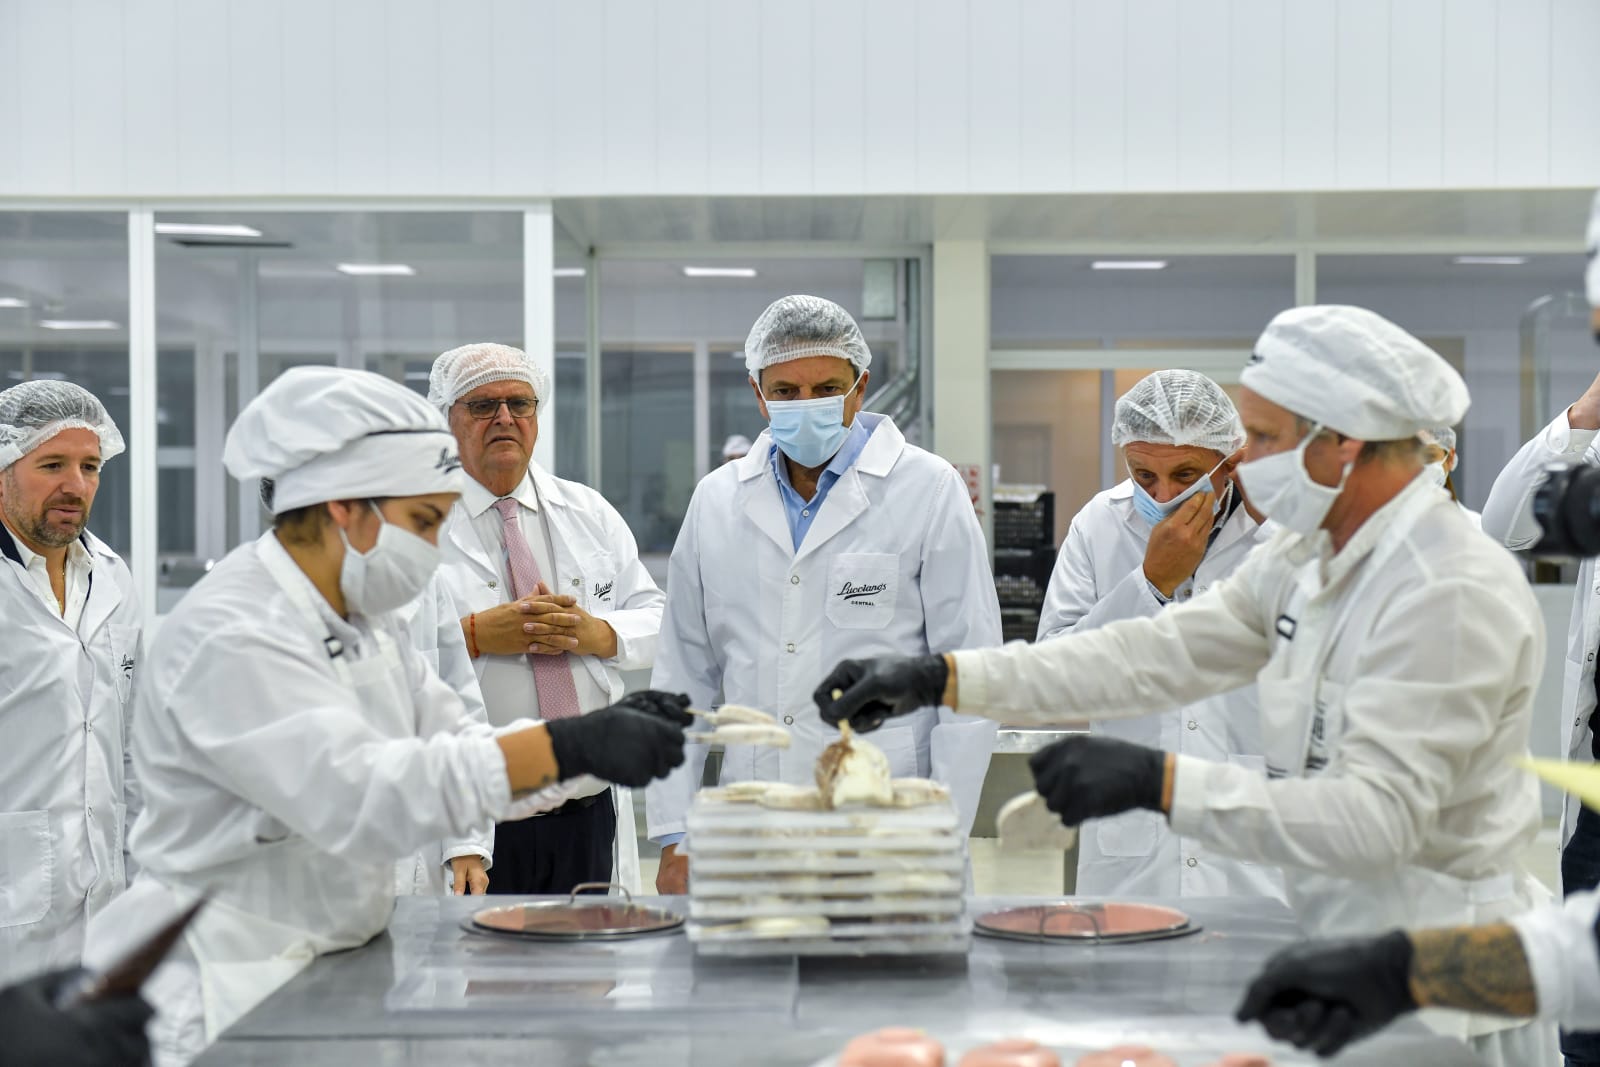 La gelateria di Lucciano sta ammodernando il suo nuovo stabilimento industriale per espandersi come azienda multinazionale